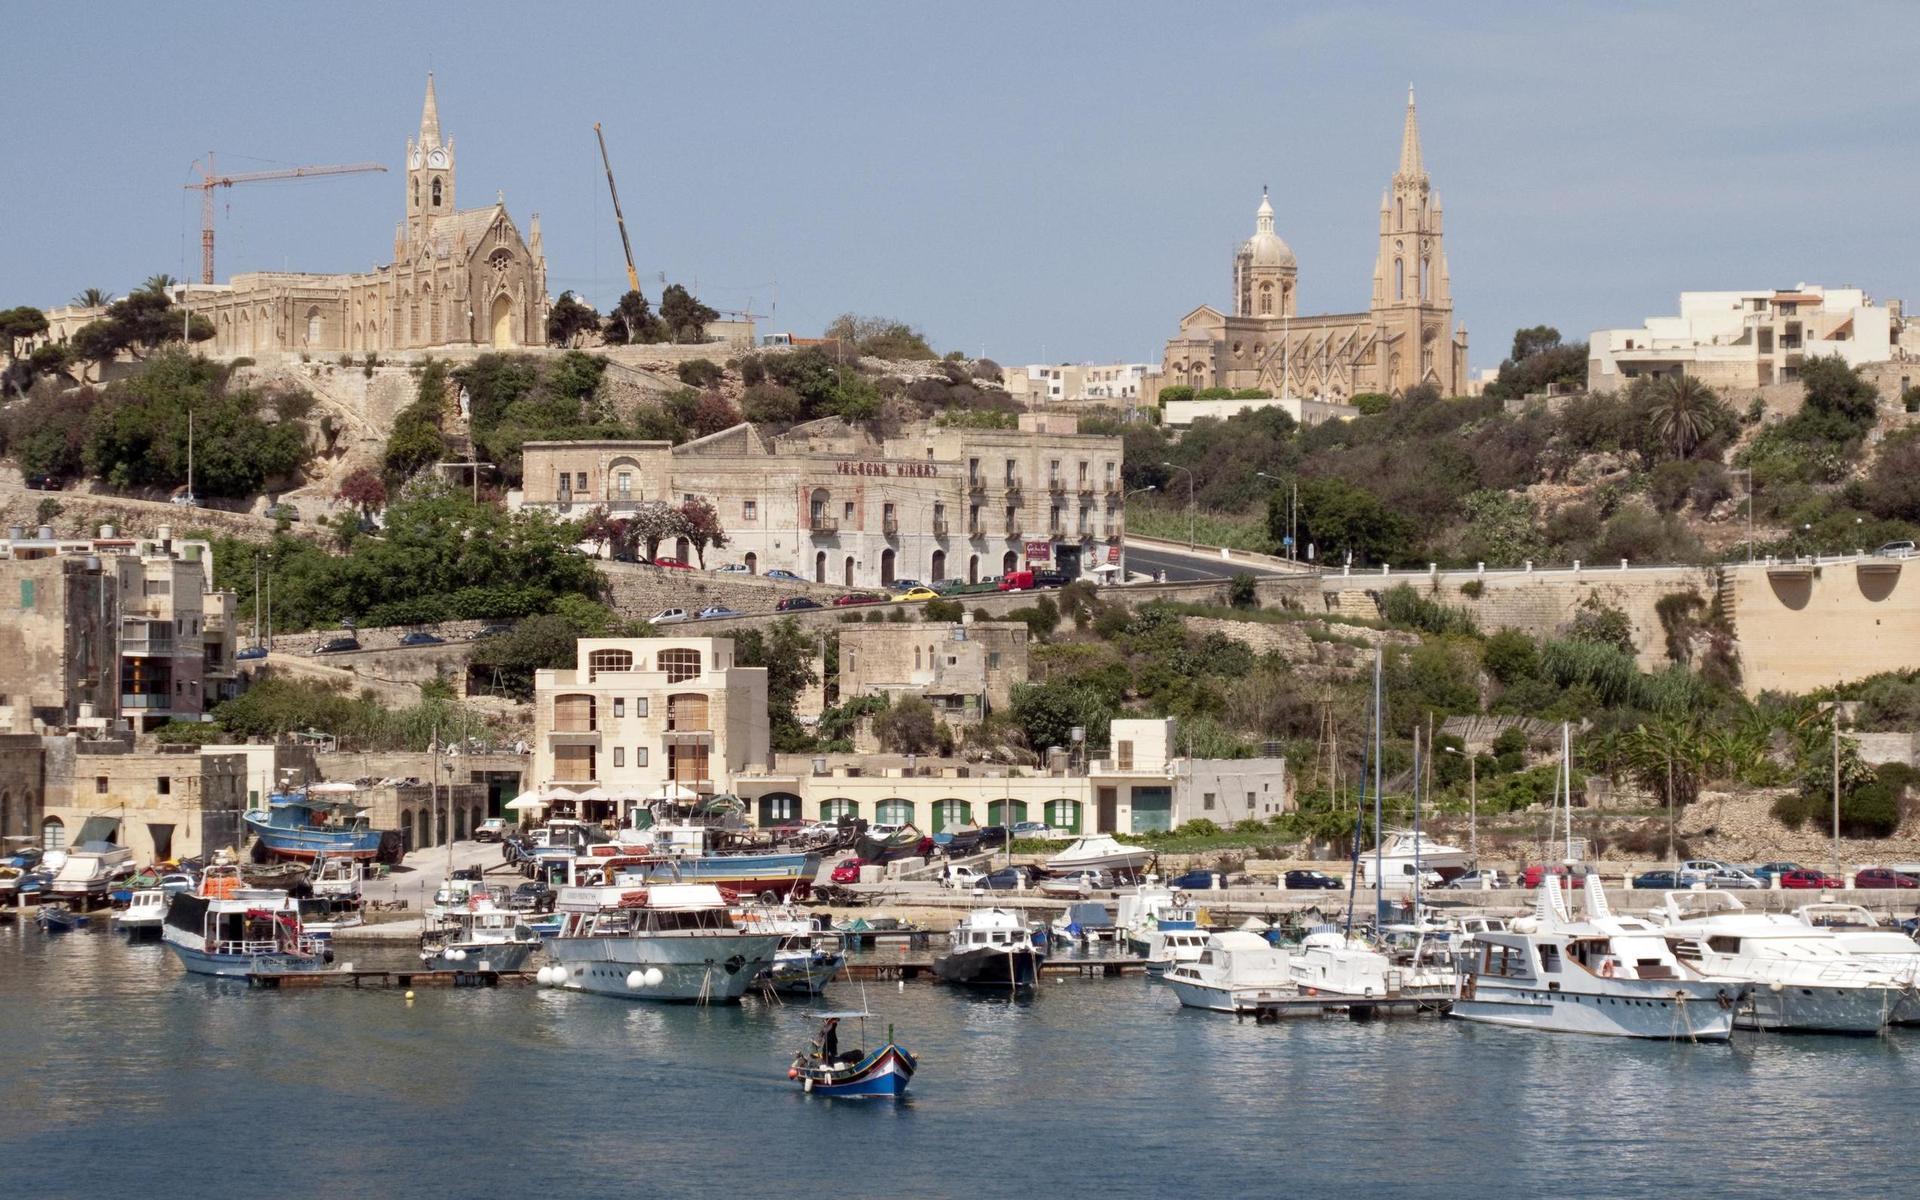 För att de ressugna att välja just Malta – östaten belägen i Medelhavet – erbjuds internationella besökare som stannar minst två nätter ett bidrag på upp till 200 euro, motsvarande cirka 2 000 svenska kronor.